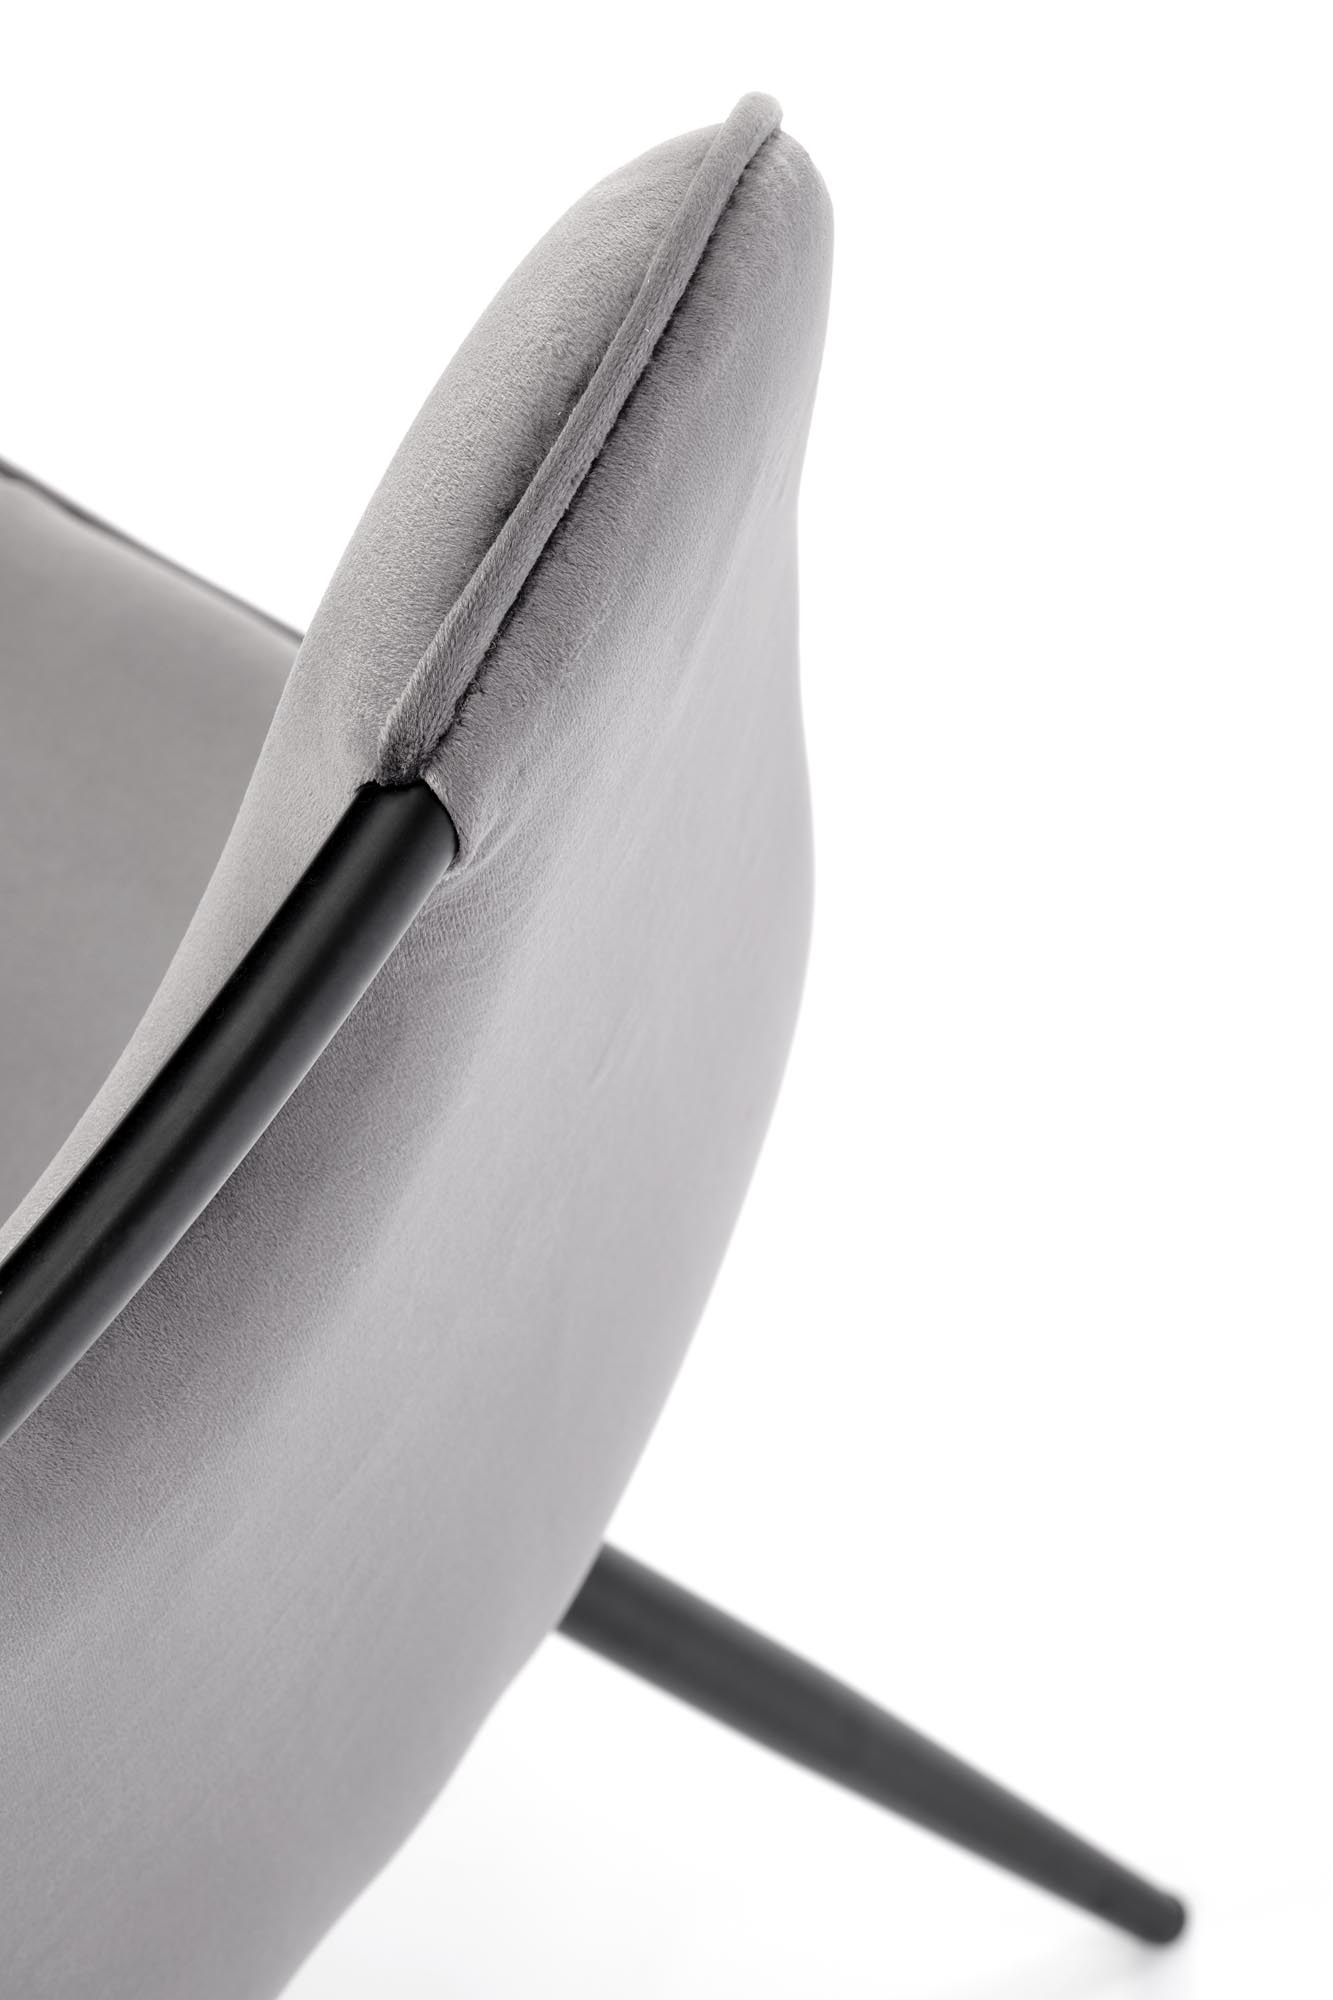 Scaun tapițat K521 - Gri Židle čalouněné k521 - Popelový